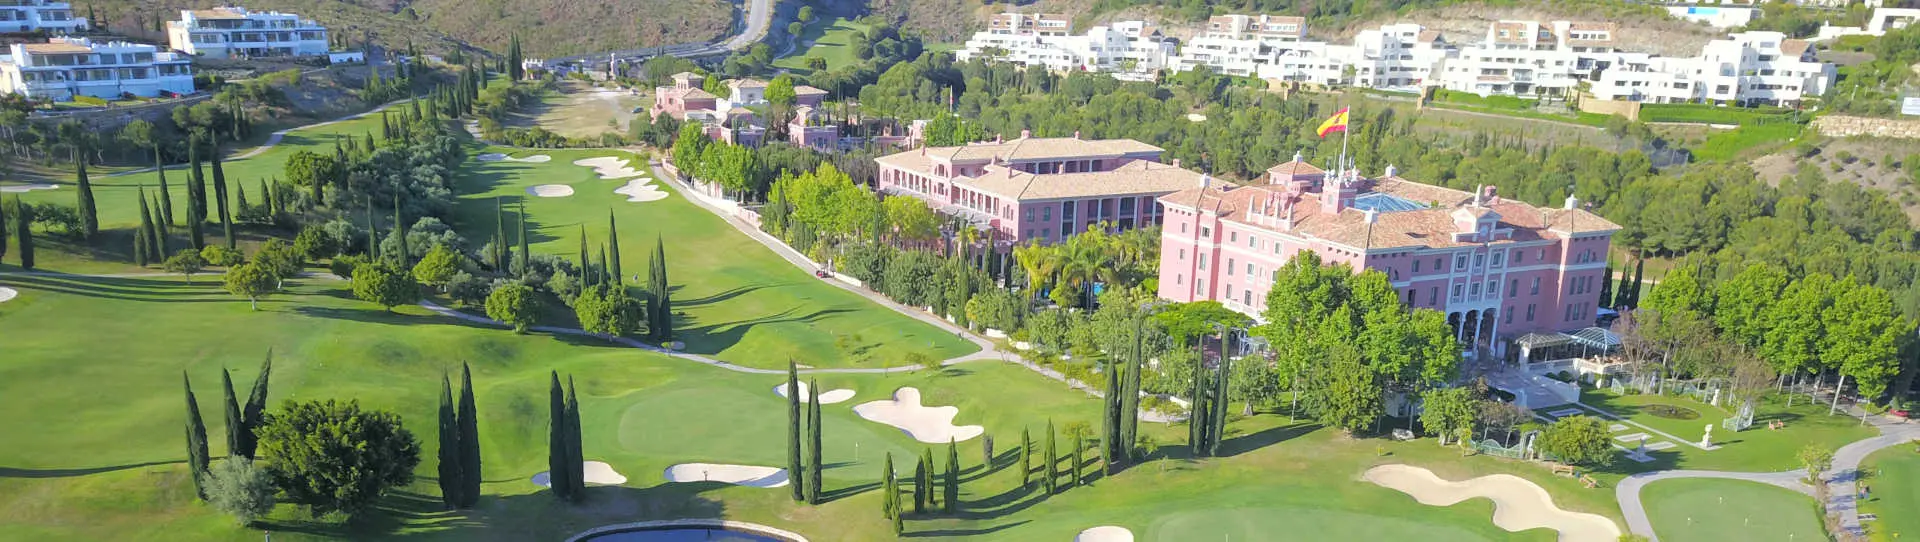 Spain golf holidays - Anantara Villa Padierna Palace Hotel G.L. - Photo 2